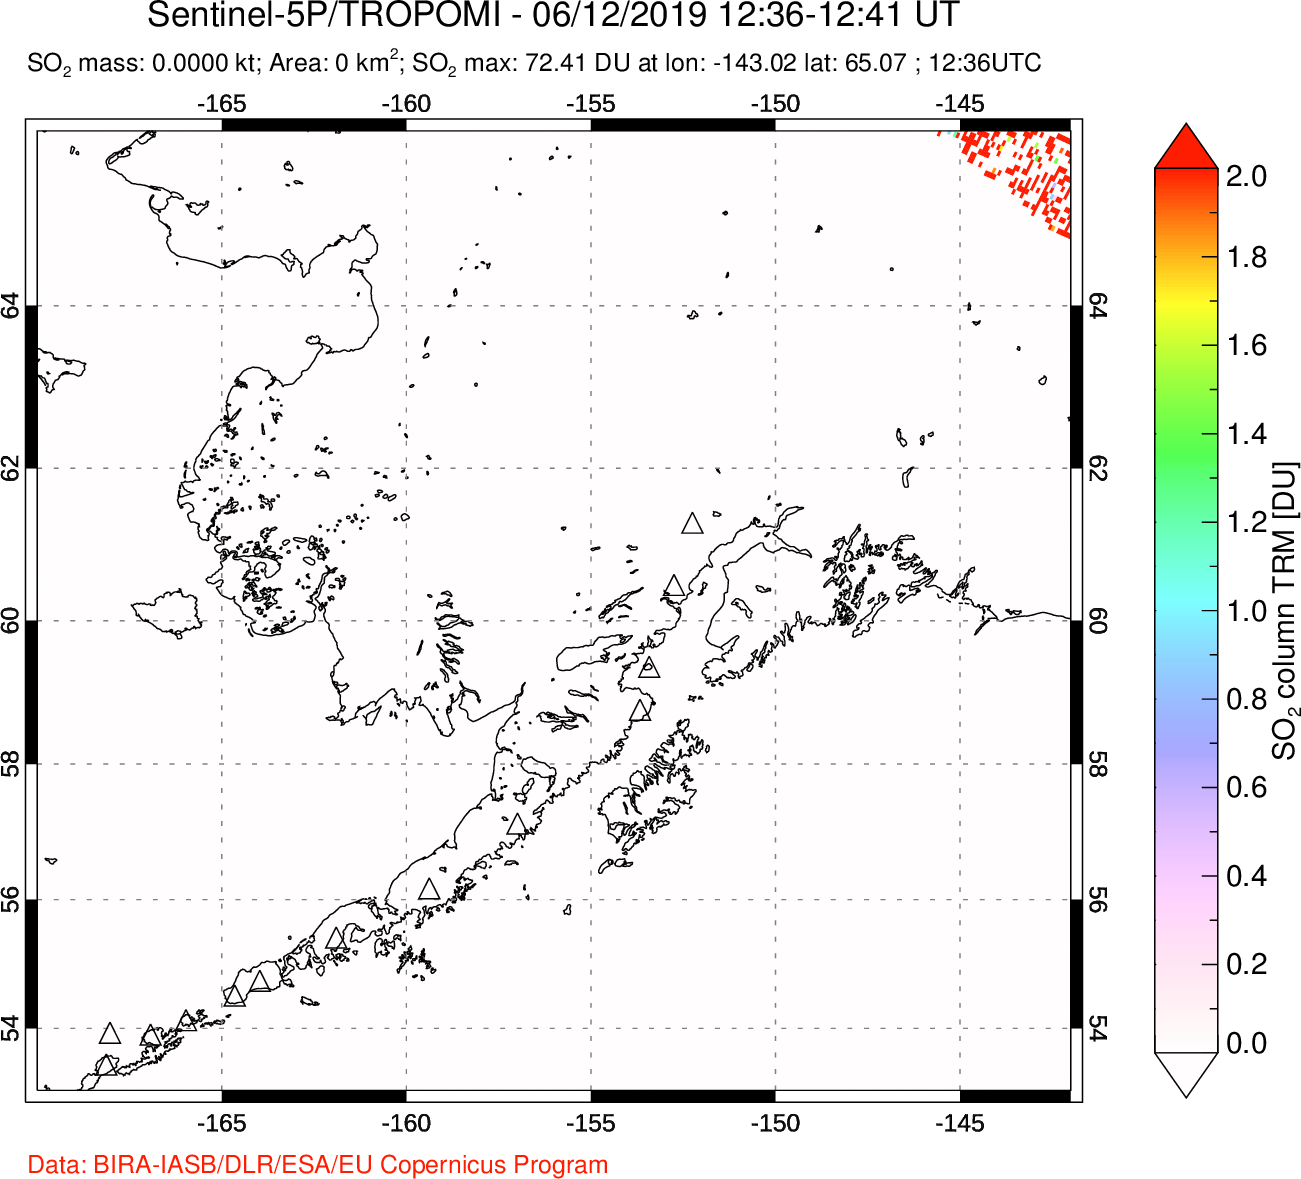 A sulfur dioxide image over Alaska, USA on Jun 12, 2019.